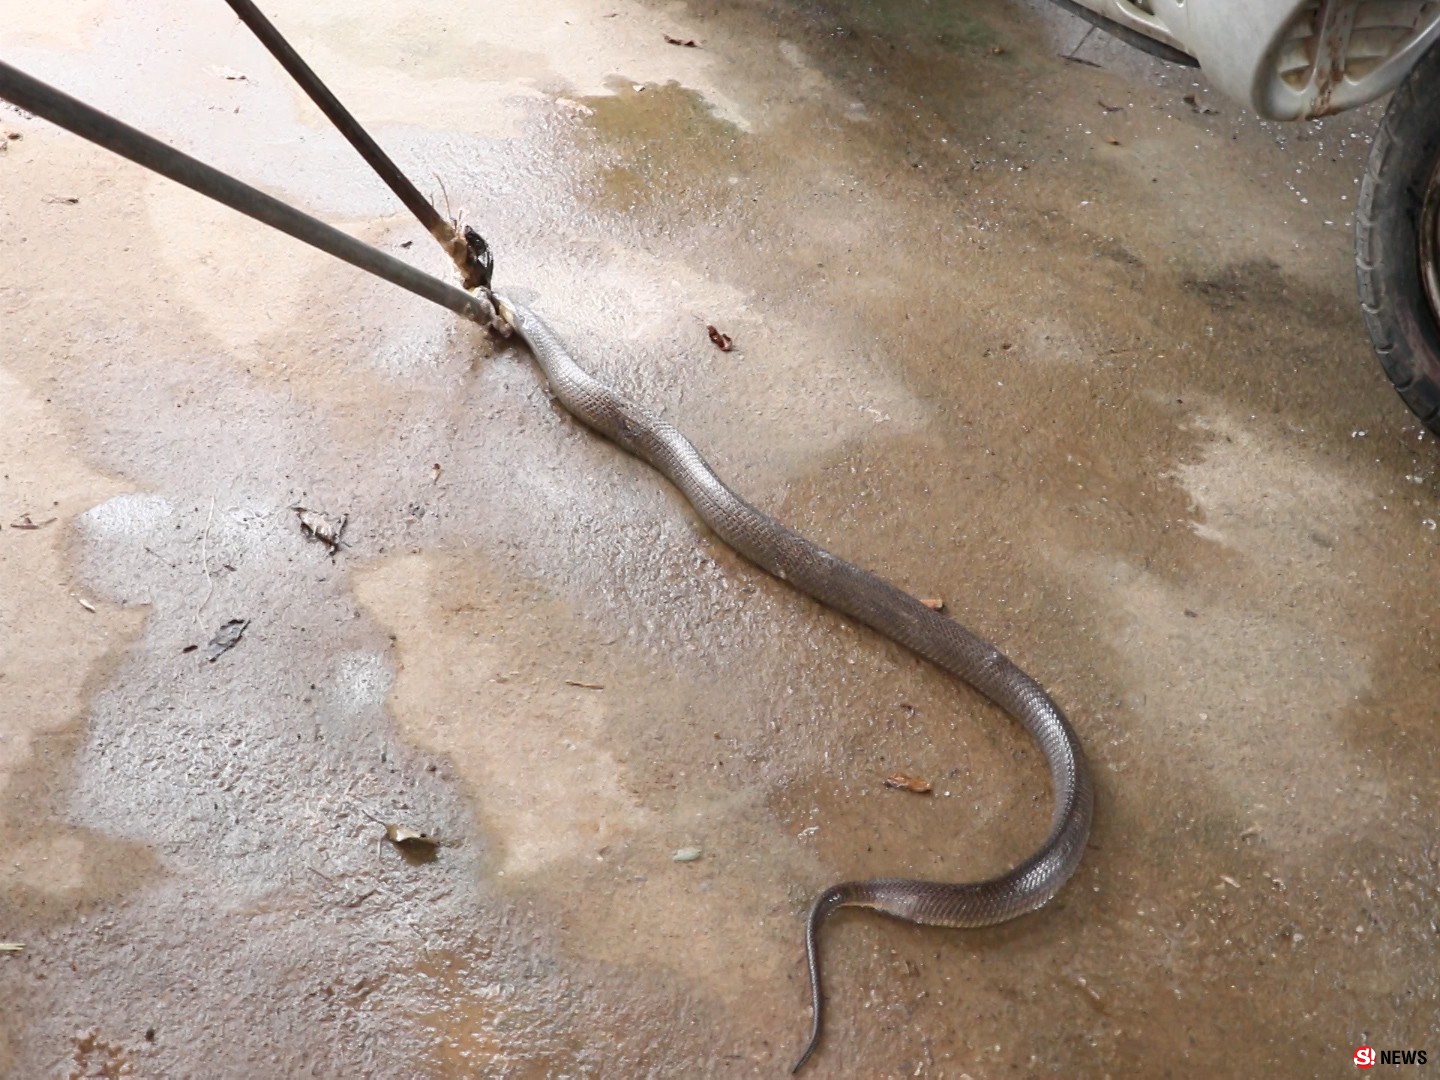 ตูบเห่าเตือนภัย-ก่อนเจ้าของบ้านผงะพบ “งูเห่าตัวเบ้ง” ซุกครัวโร่แจ้งกู้ภัยจับ